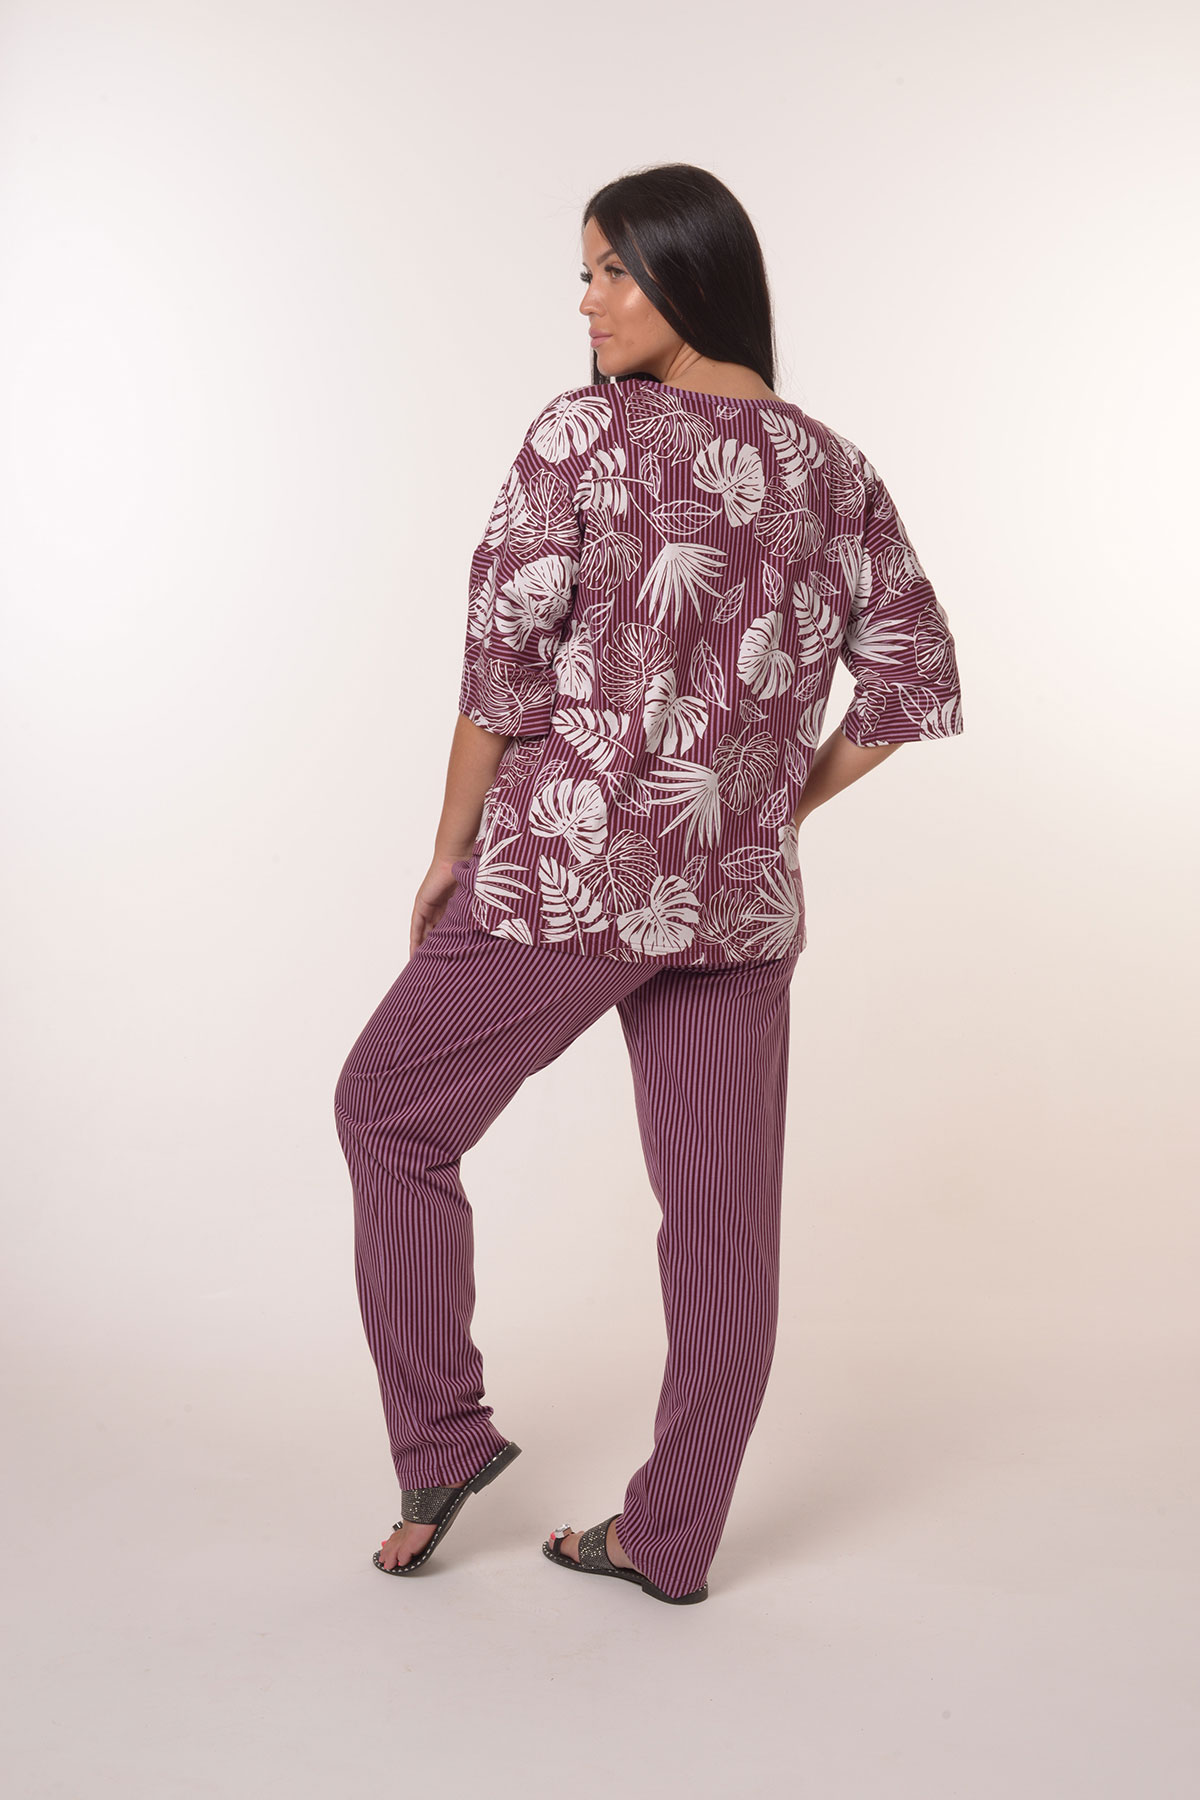 Жен. костюм повседневный арт. 23-0390 Фиолетовый р. 60 Моделлини, размер 60 - фото 4